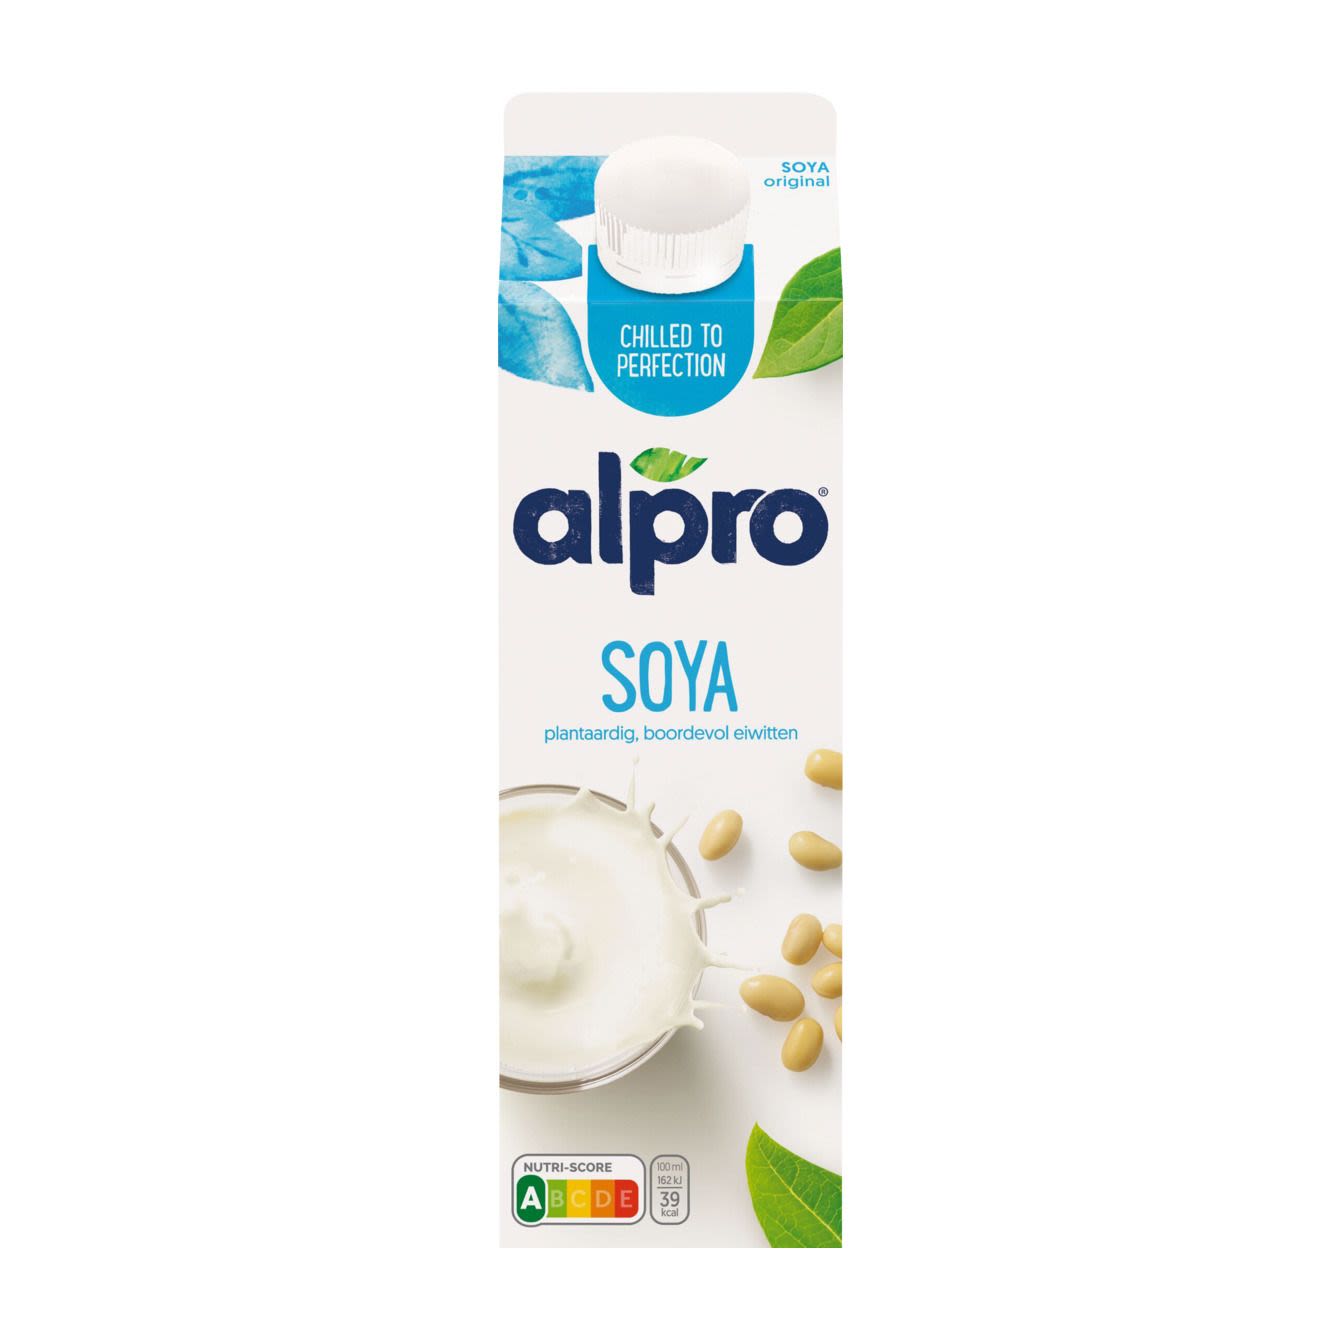 Alpro Sojadrink original fresh online bestellen? | Coop.nl